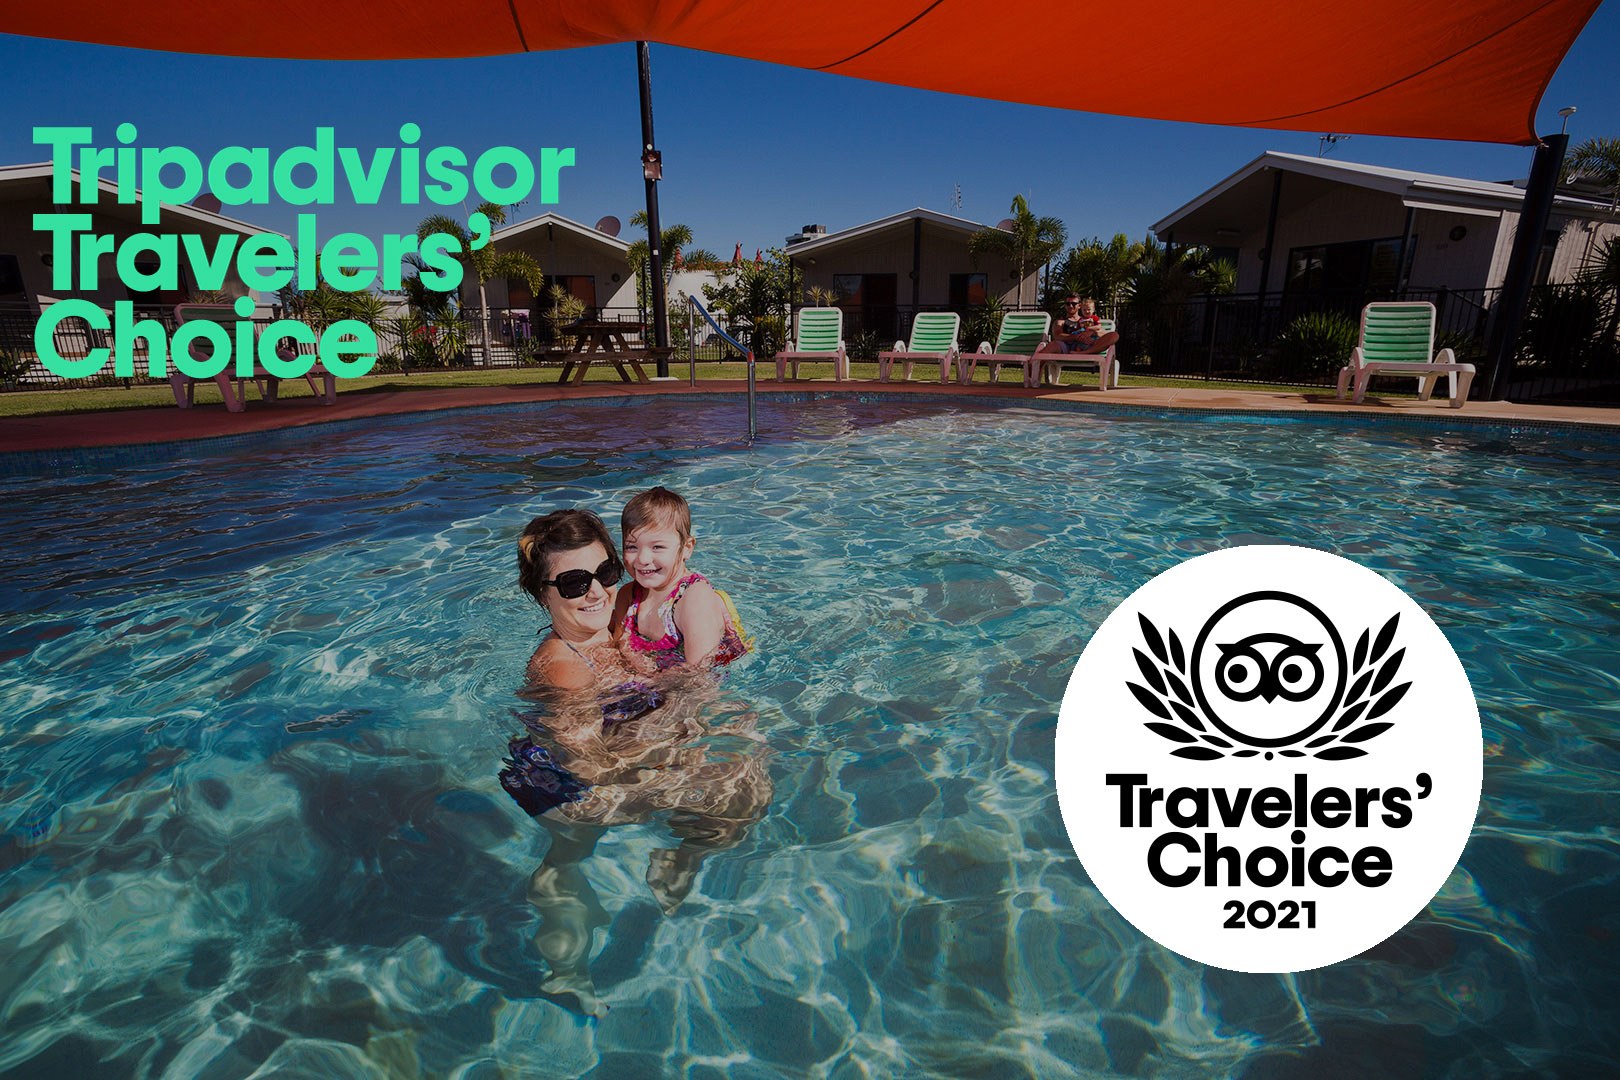 Travel Adviser 2021 award winner